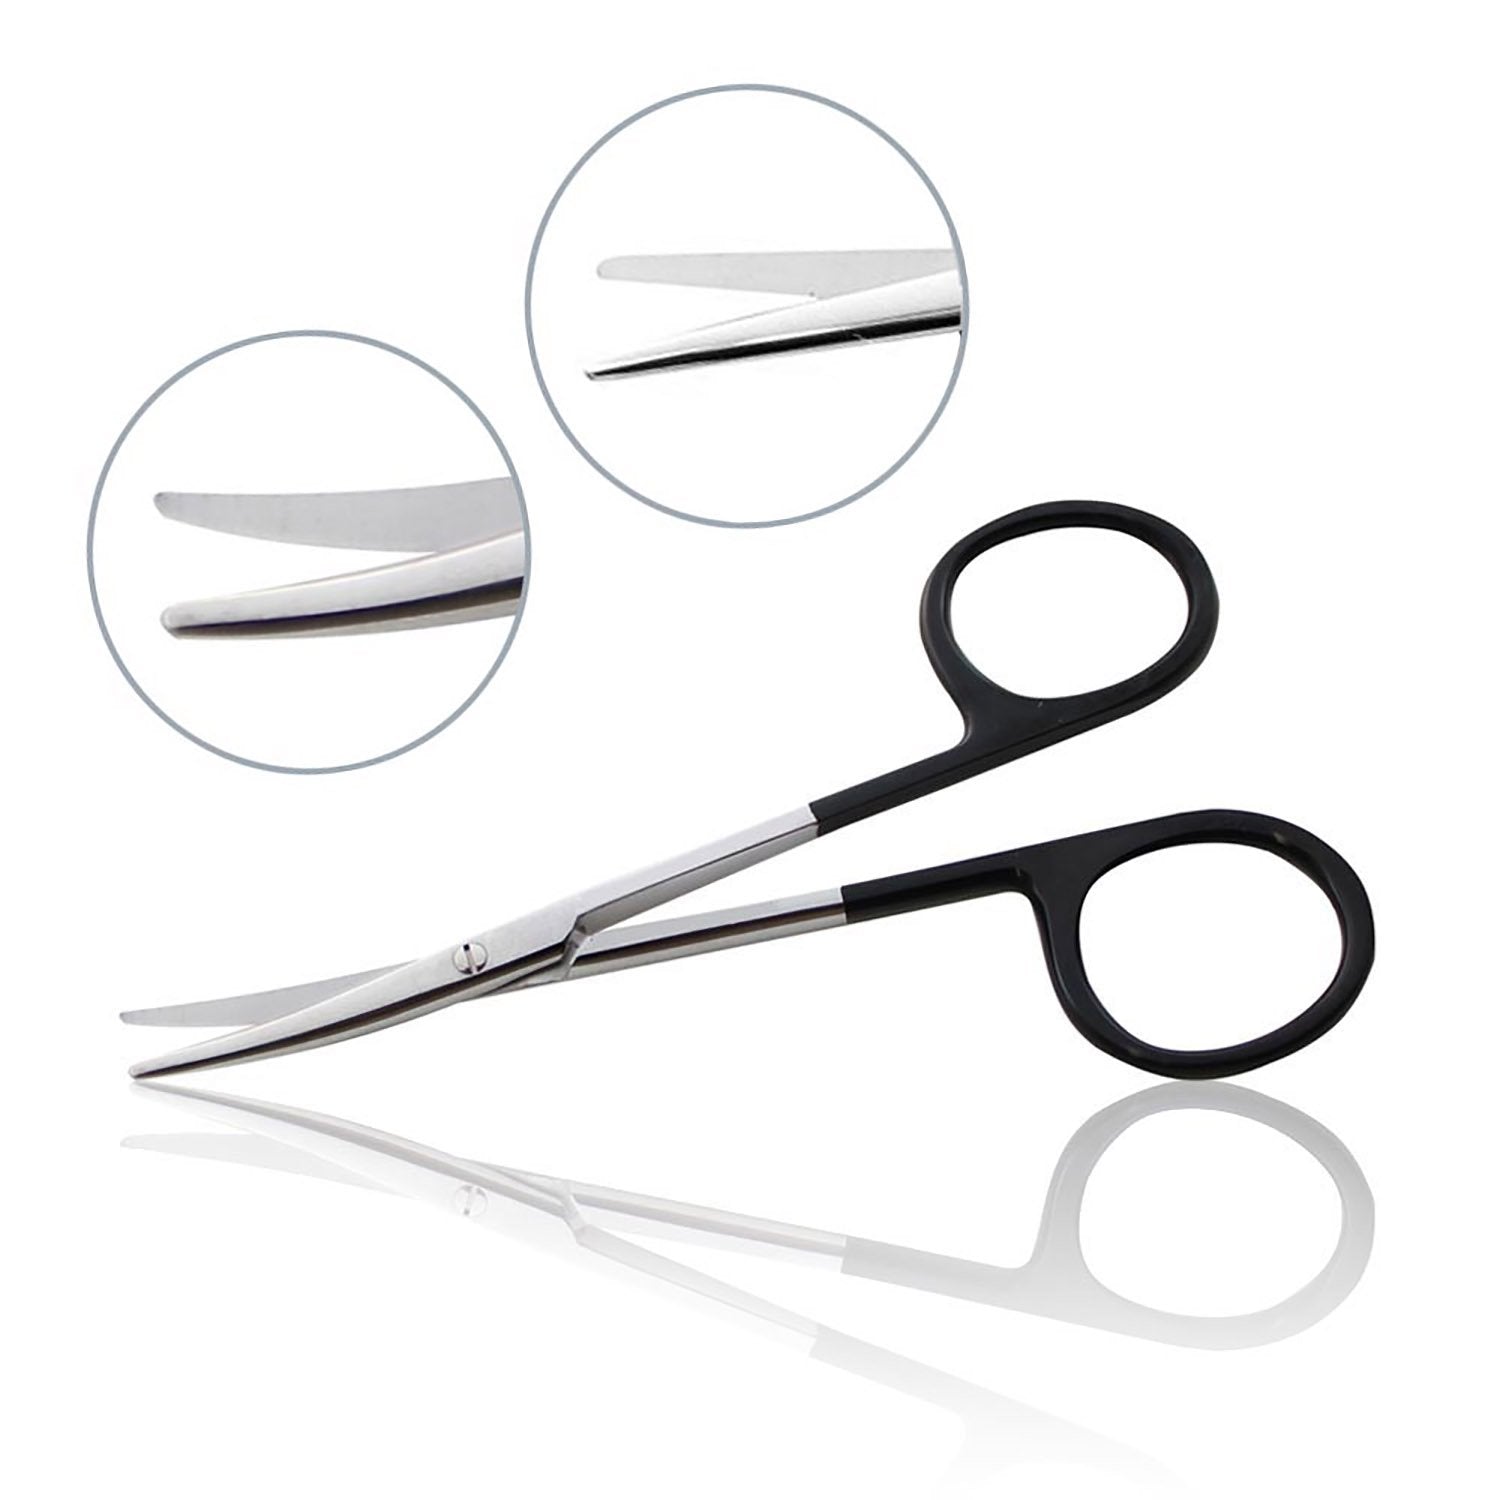 Supercut Dissecting Scissors